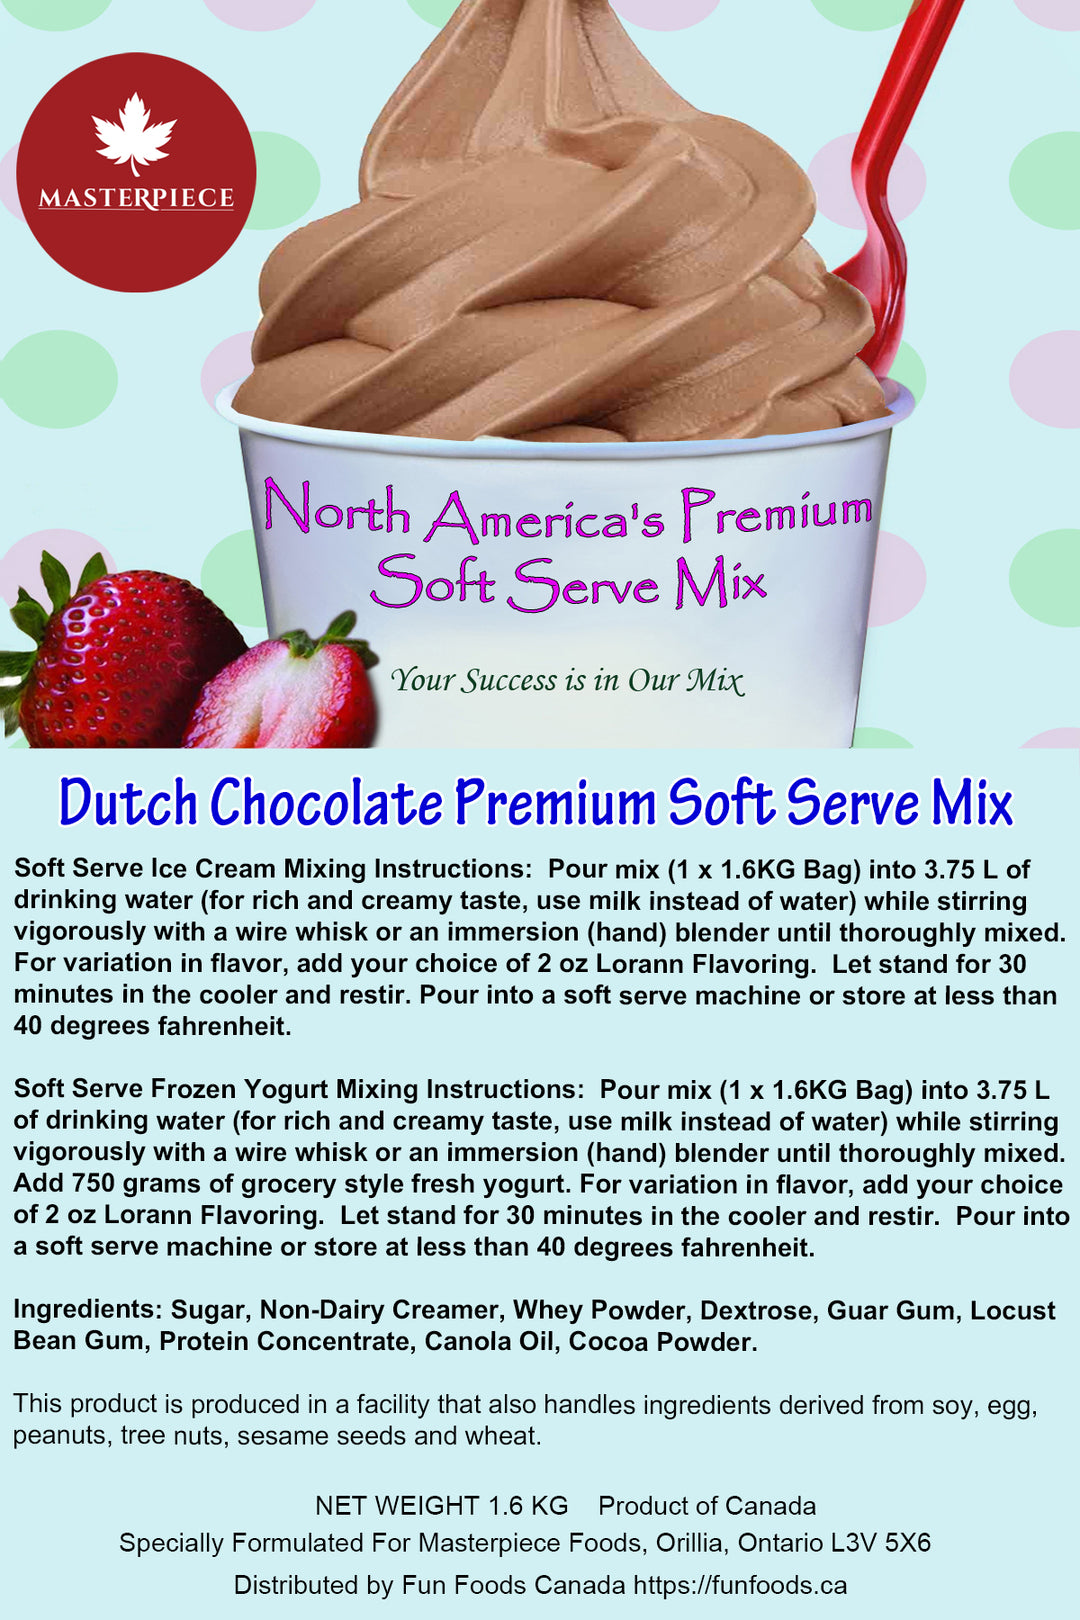 Dutch Chocolate Premium 3-in-1 Soft Serve Mix - 3.5 Lbs Bag - Case (12 x 3.5lb Bags) - Made in Canada